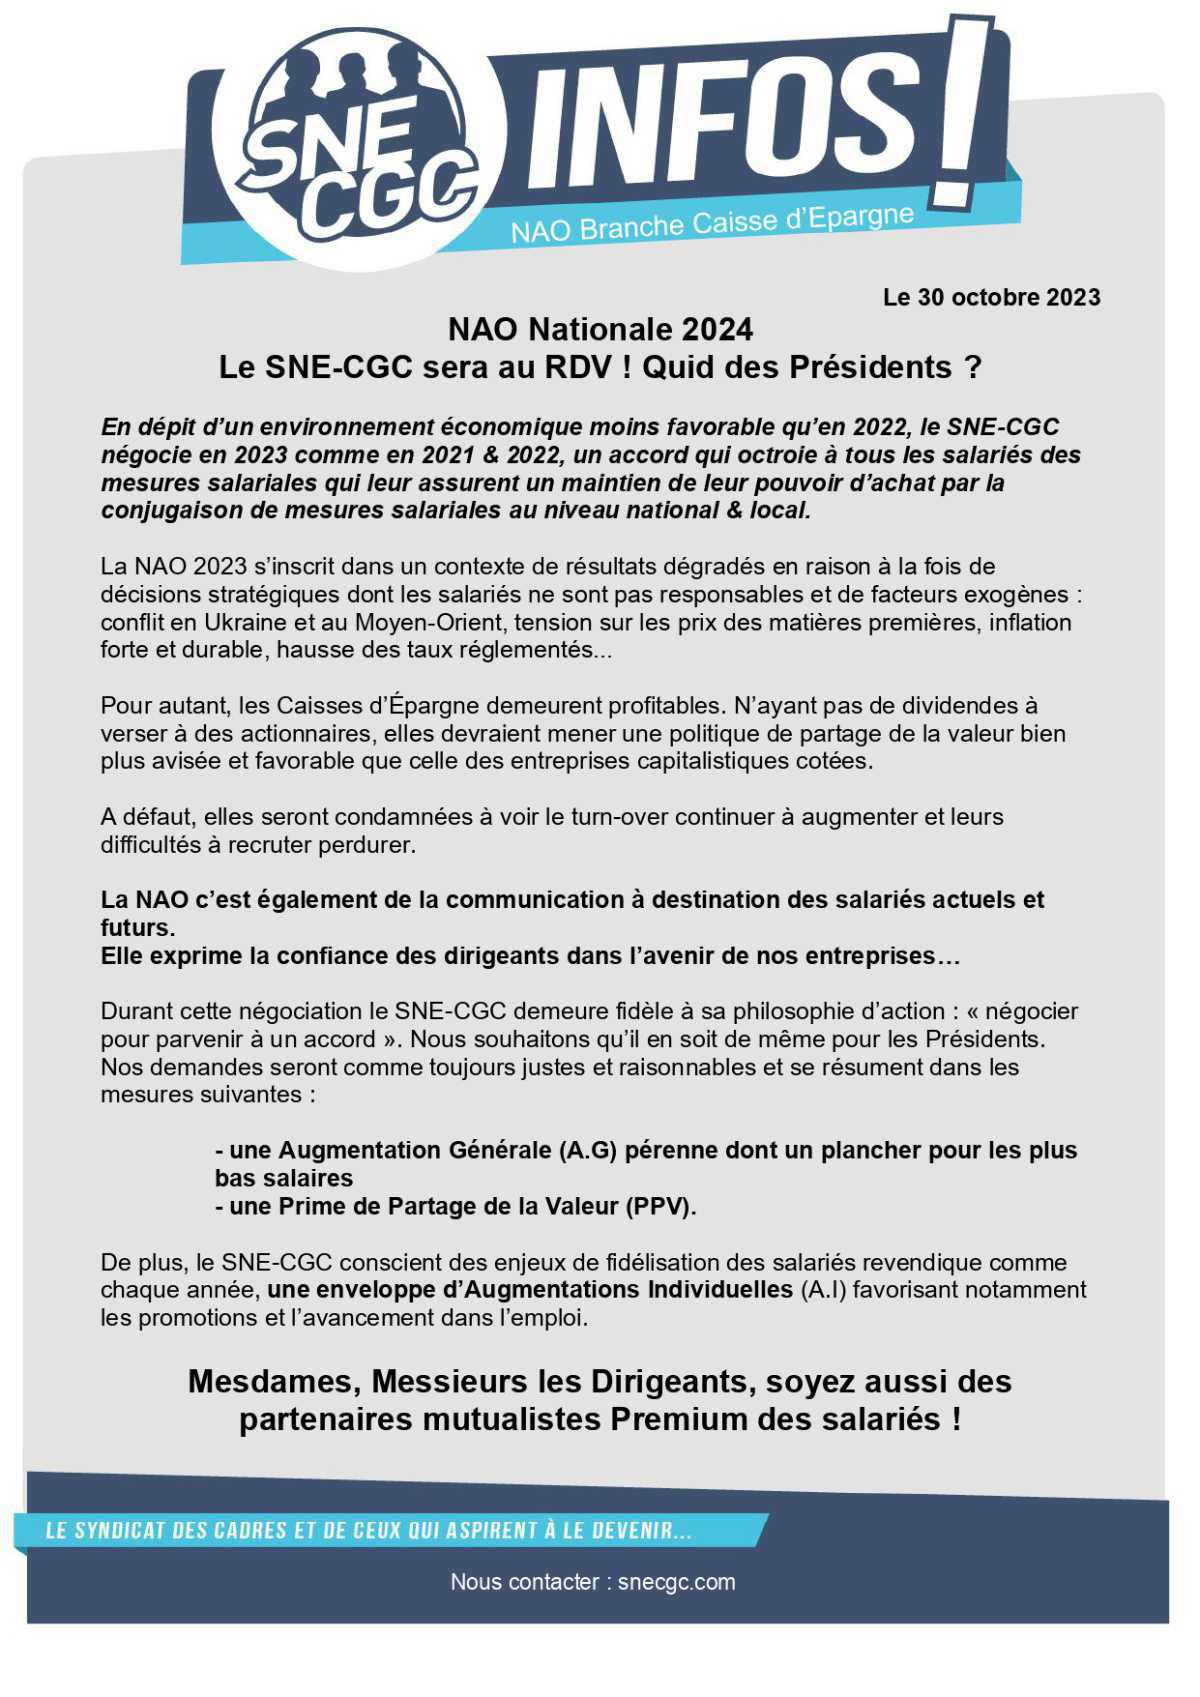 NAO nationales 2024 ... Le SNE-CGC est au Rendez-Vous !